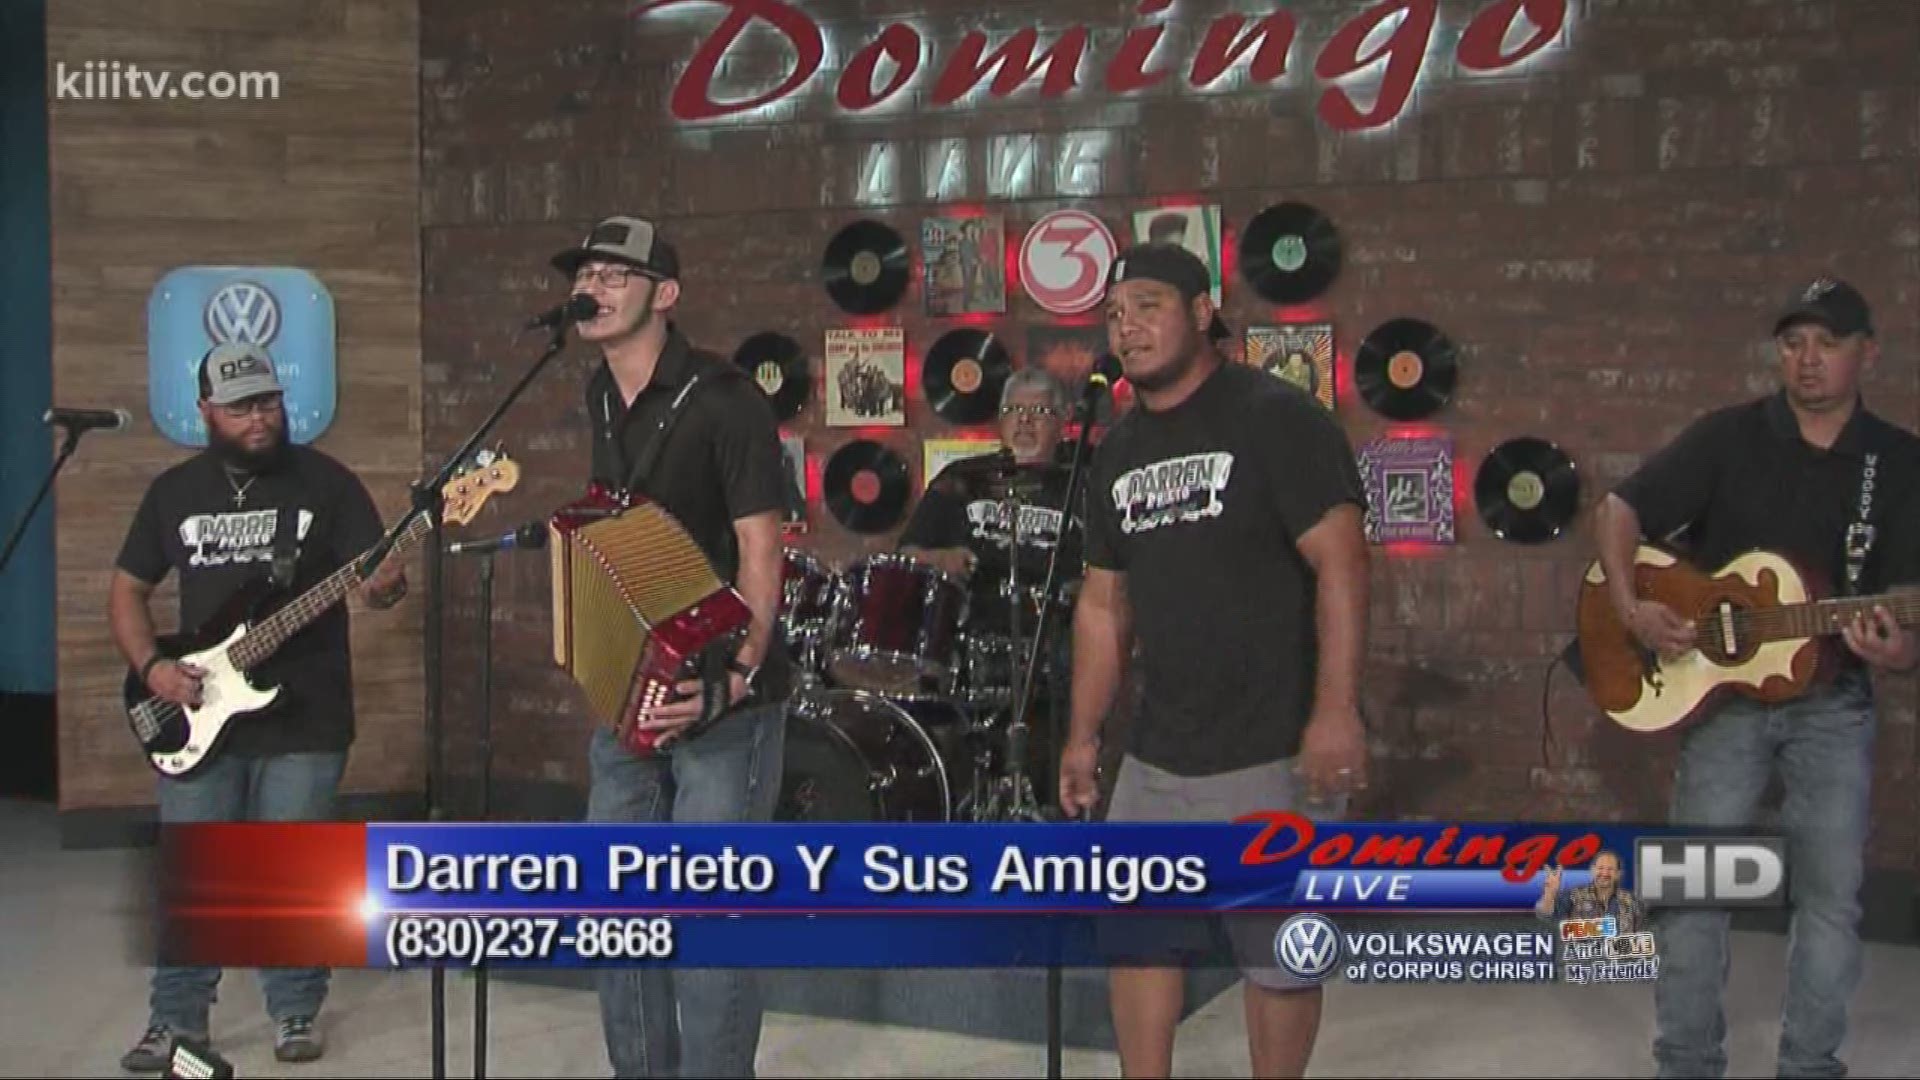 Darren Prieto Y Sus Amigos performing "Darren's Cumbia" on Domingo Live.